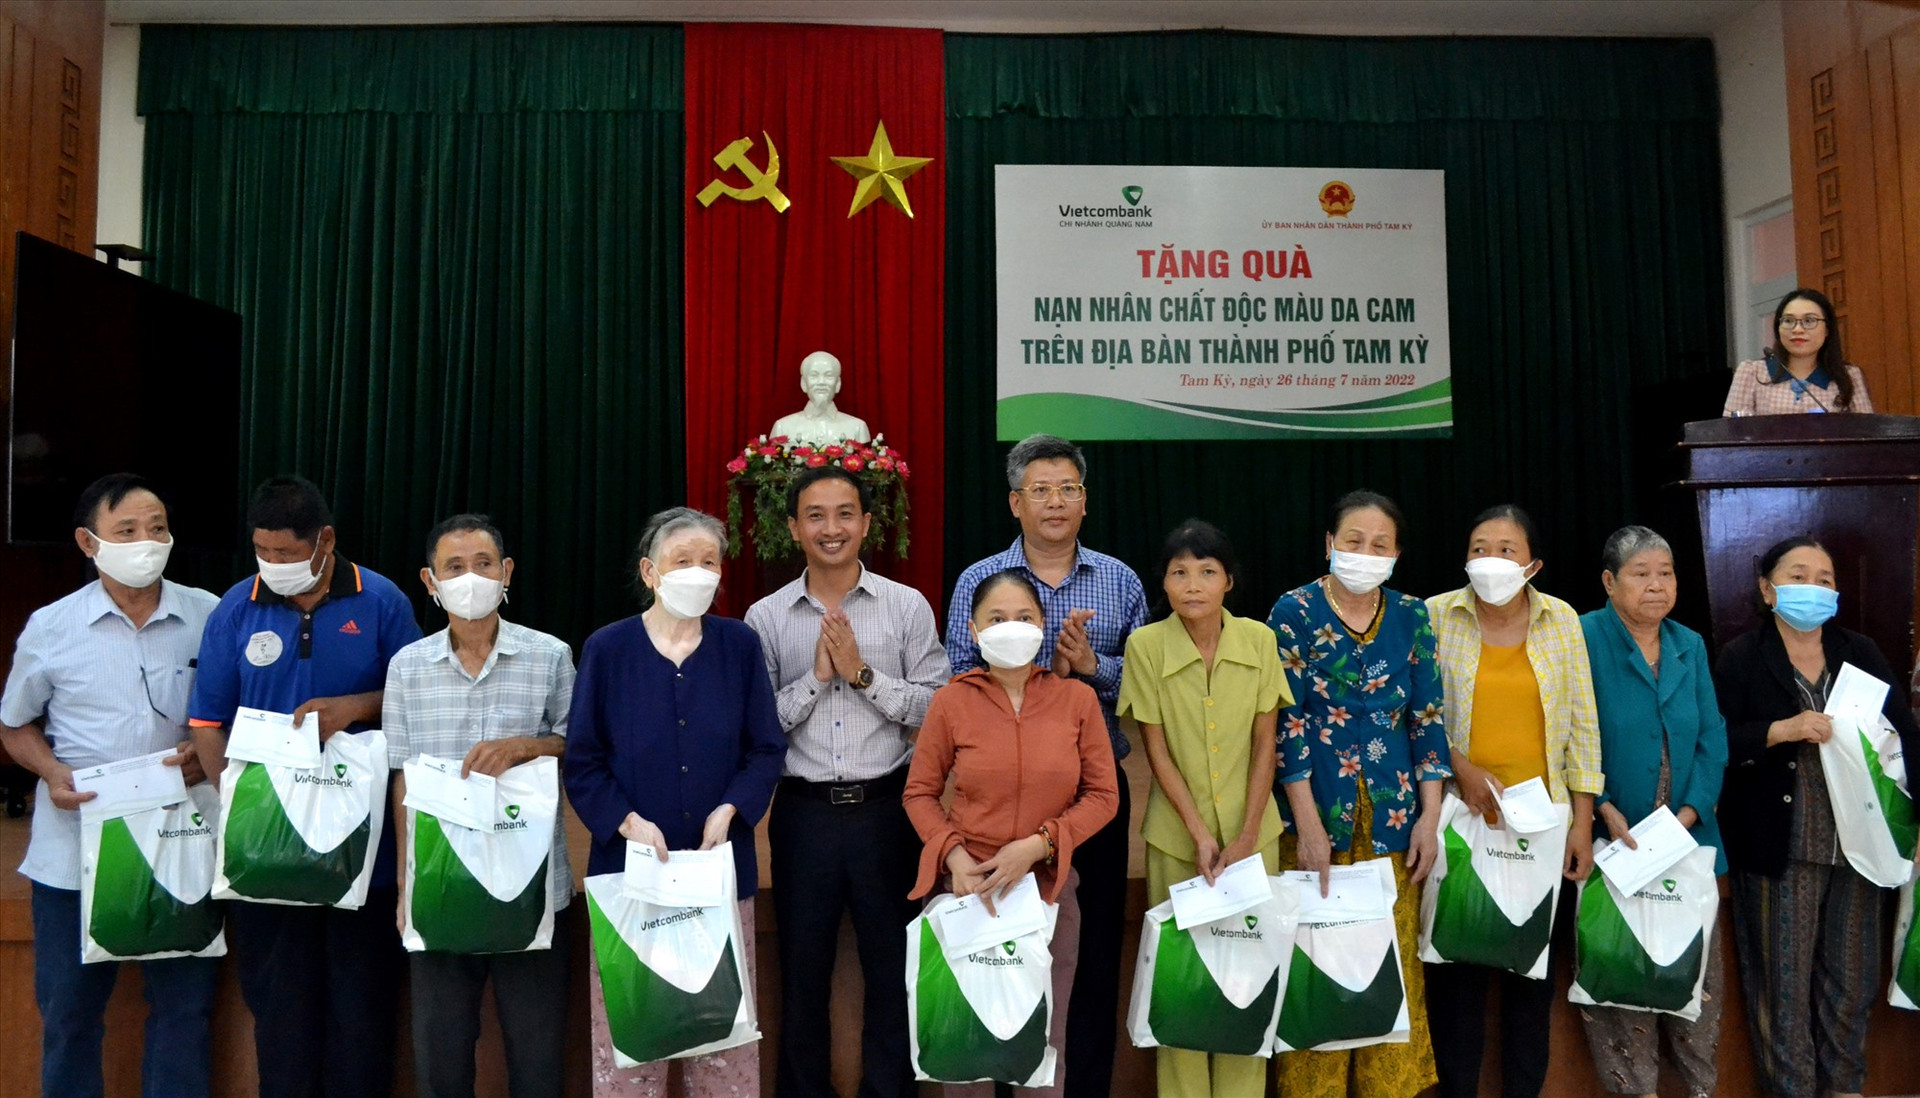 UBND TP.Tam Kỳ phối hợp với Vietcombank Quảng Nam tặng 50 suất quà hỗ trợ nạn nhân chất đôc da cam trên địa bàn. Ảnh: Q.VIỆT